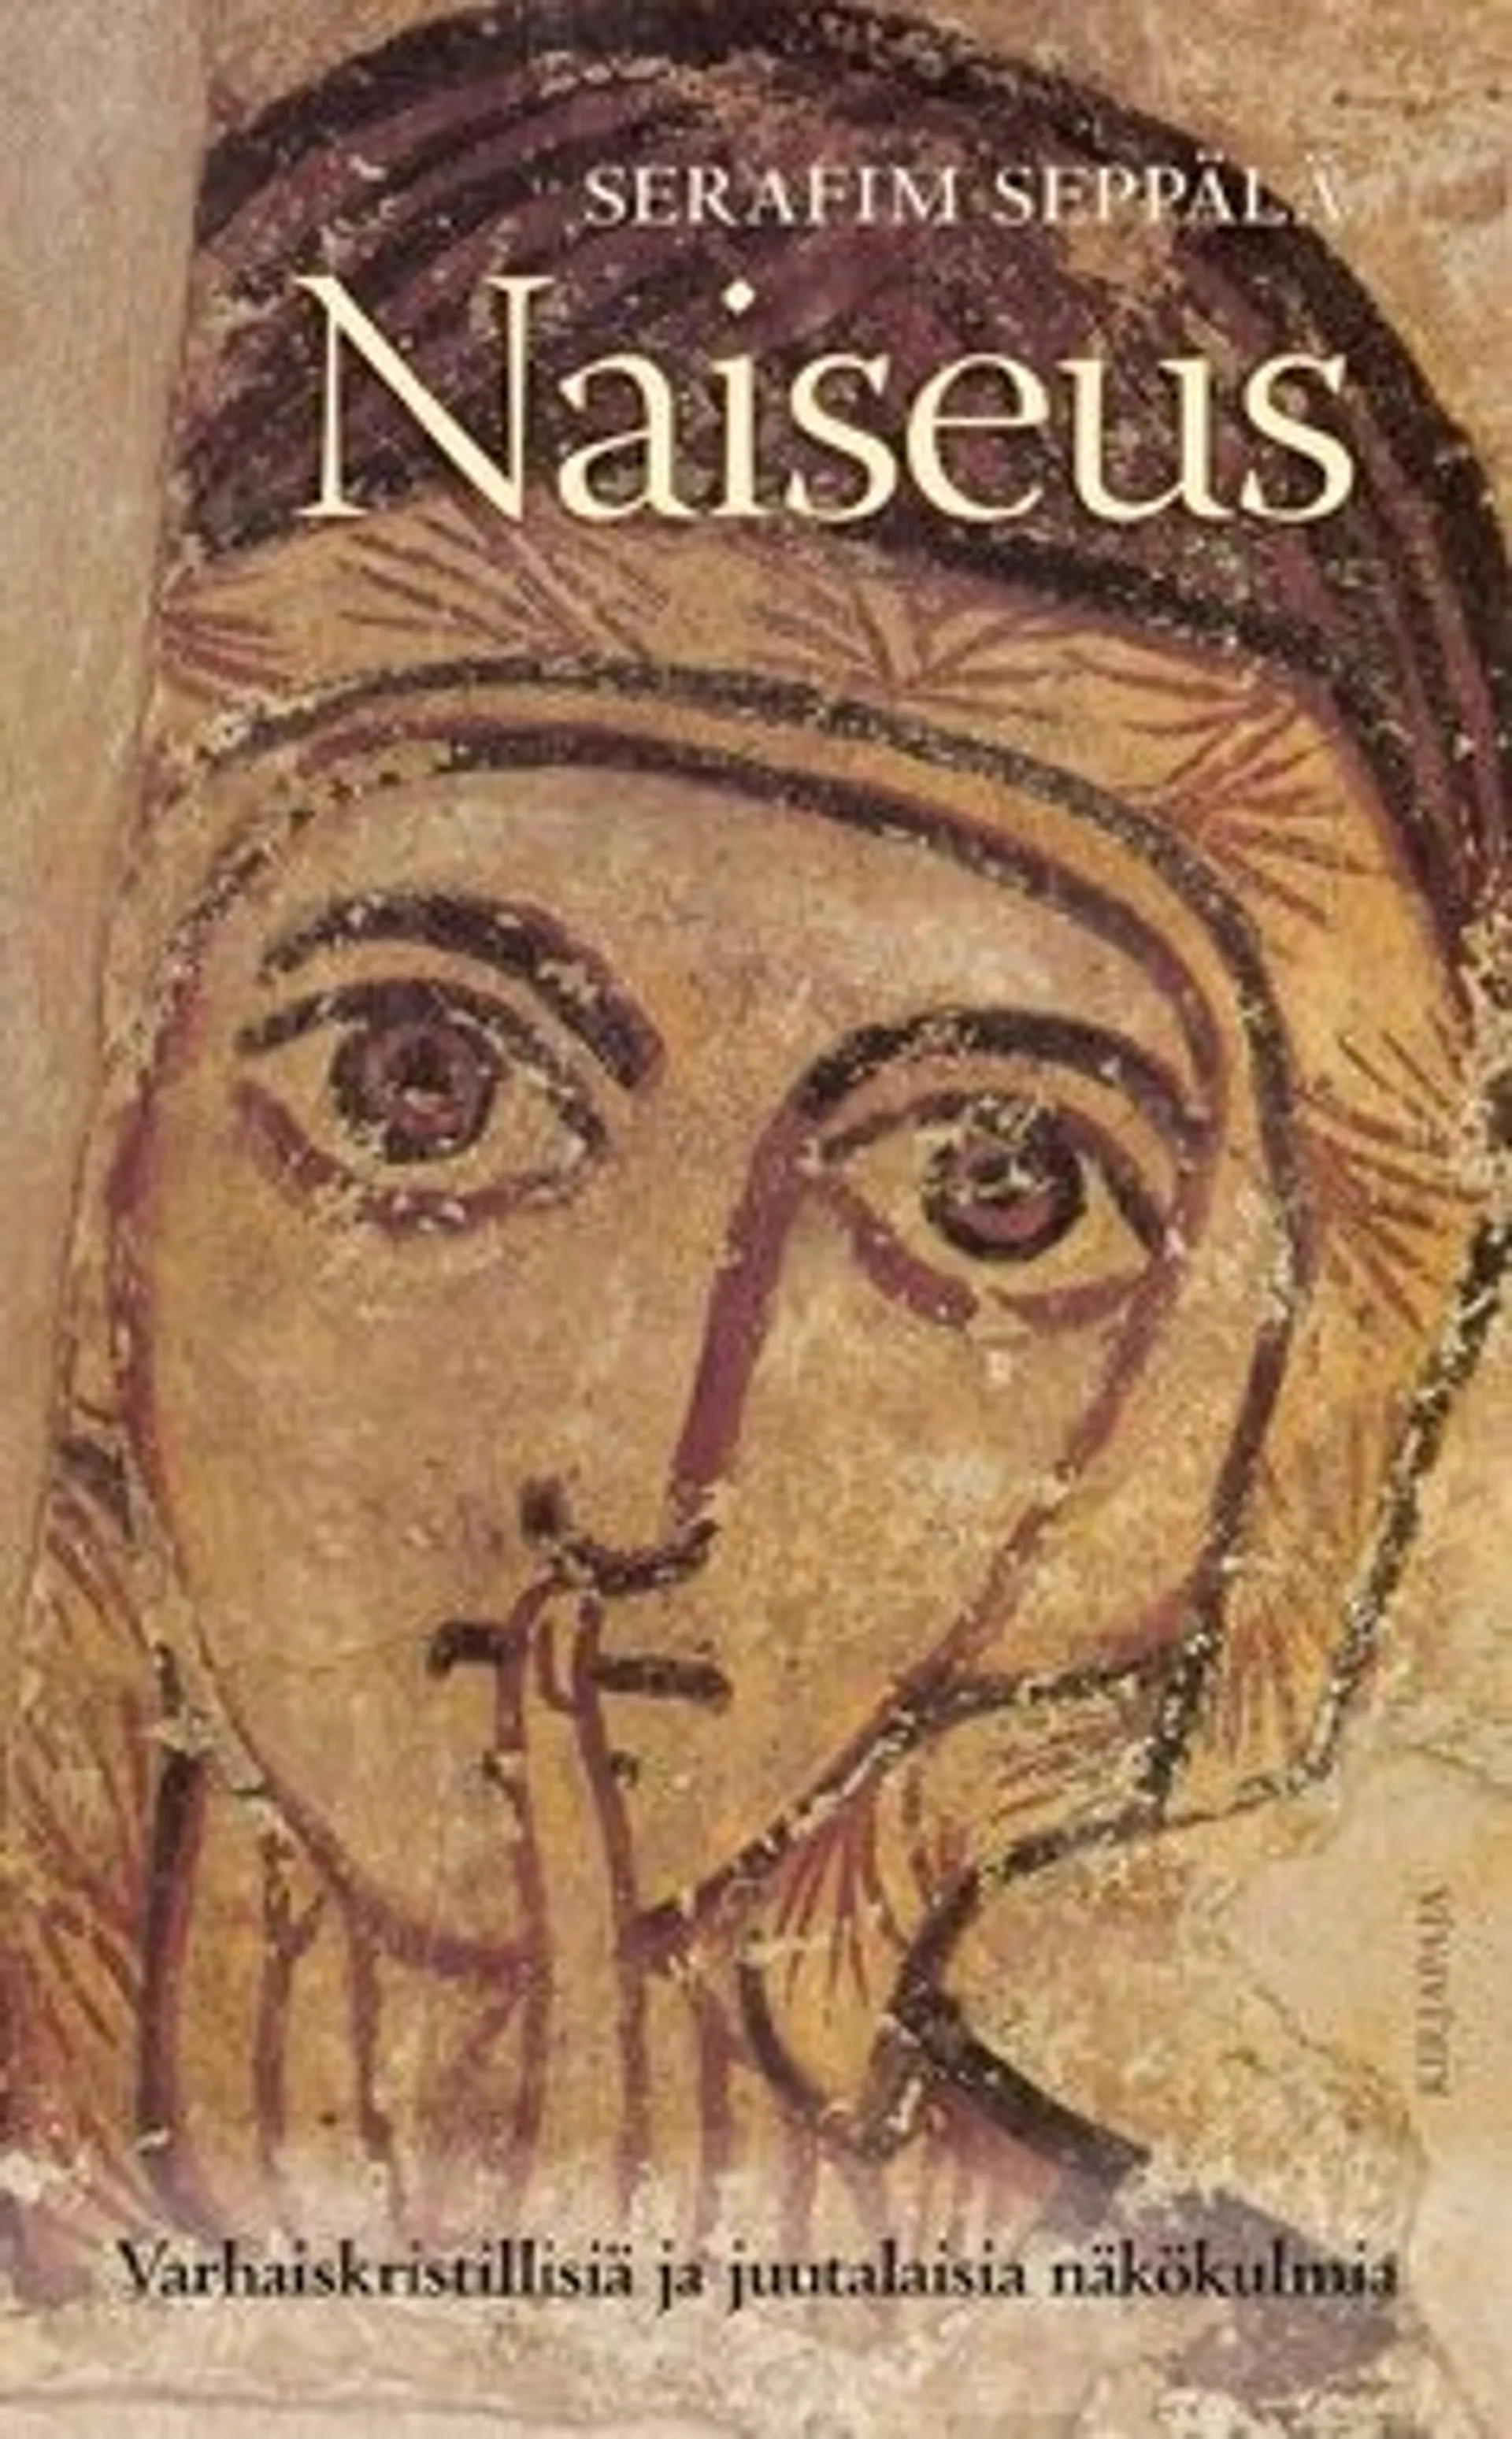 Seppälä, Naiseus - varhaiskristillisiä ja juutalaisia näkökulmia